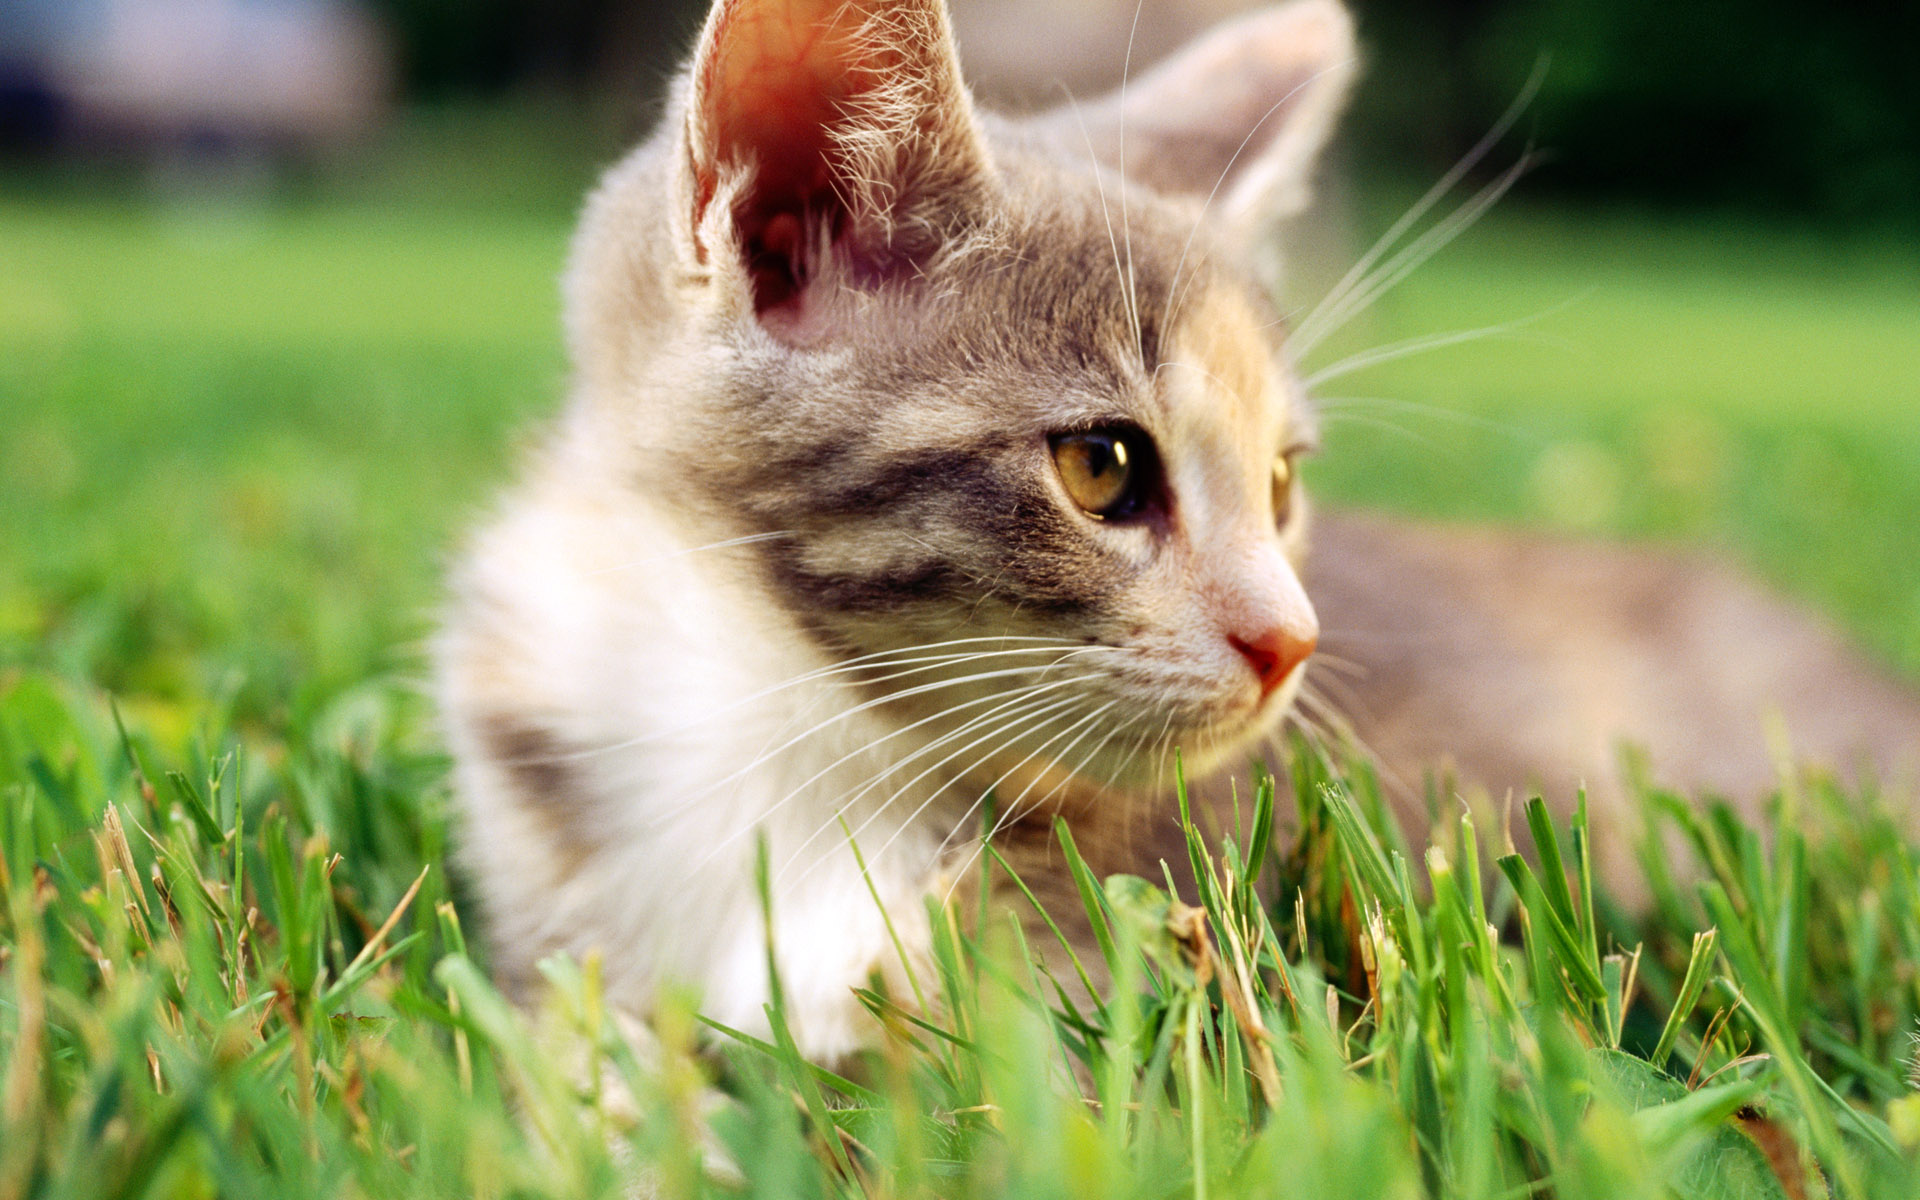 cats, Grass, Outdoors, Kittens Wallpaper